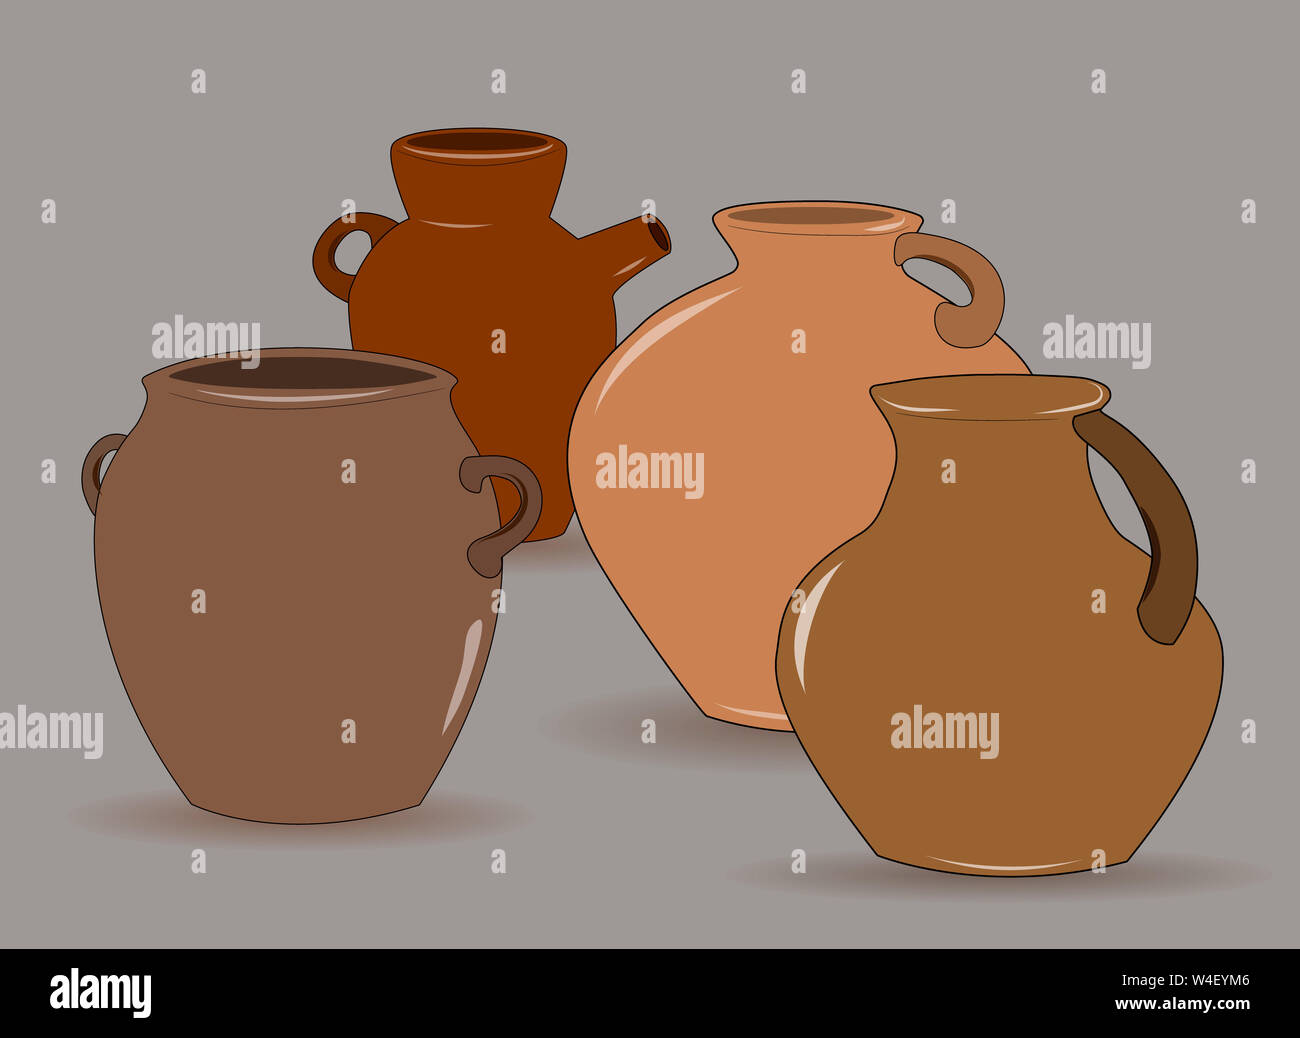 Flache Zeichnung des Kännchens. Ein Set aus Steingut Kannen.Geschirr für Getränke. Grau. Abbildung Stockfoto